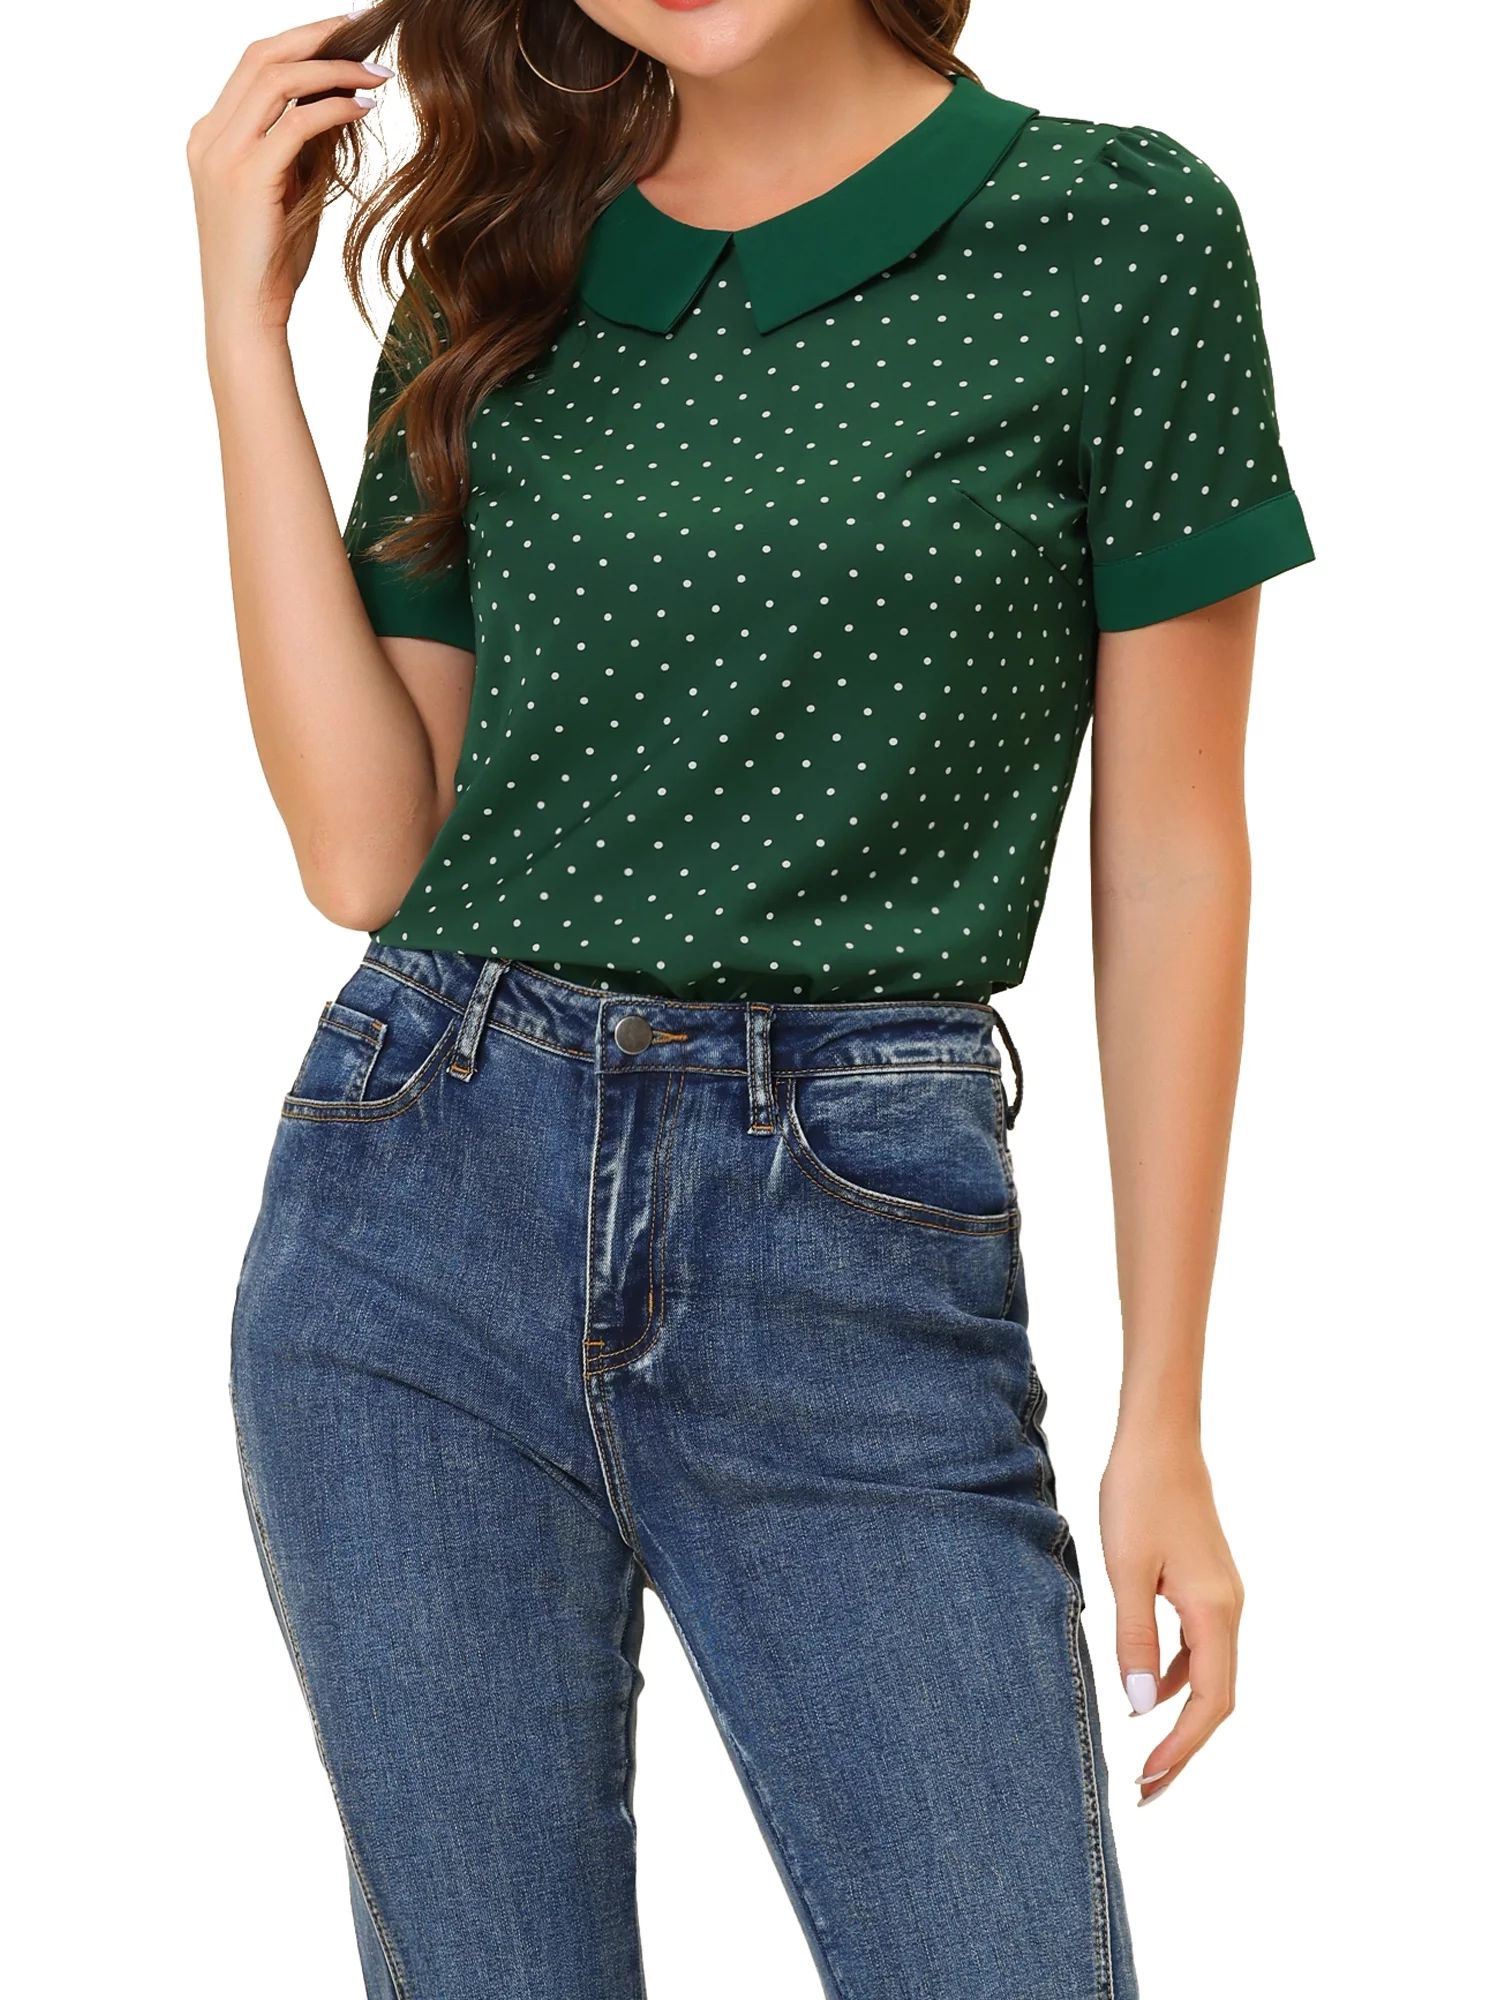 Allegra K Women's Contrast Peter Pan Collar Polka Dots Short Sleeve Tops | Walmart (US)